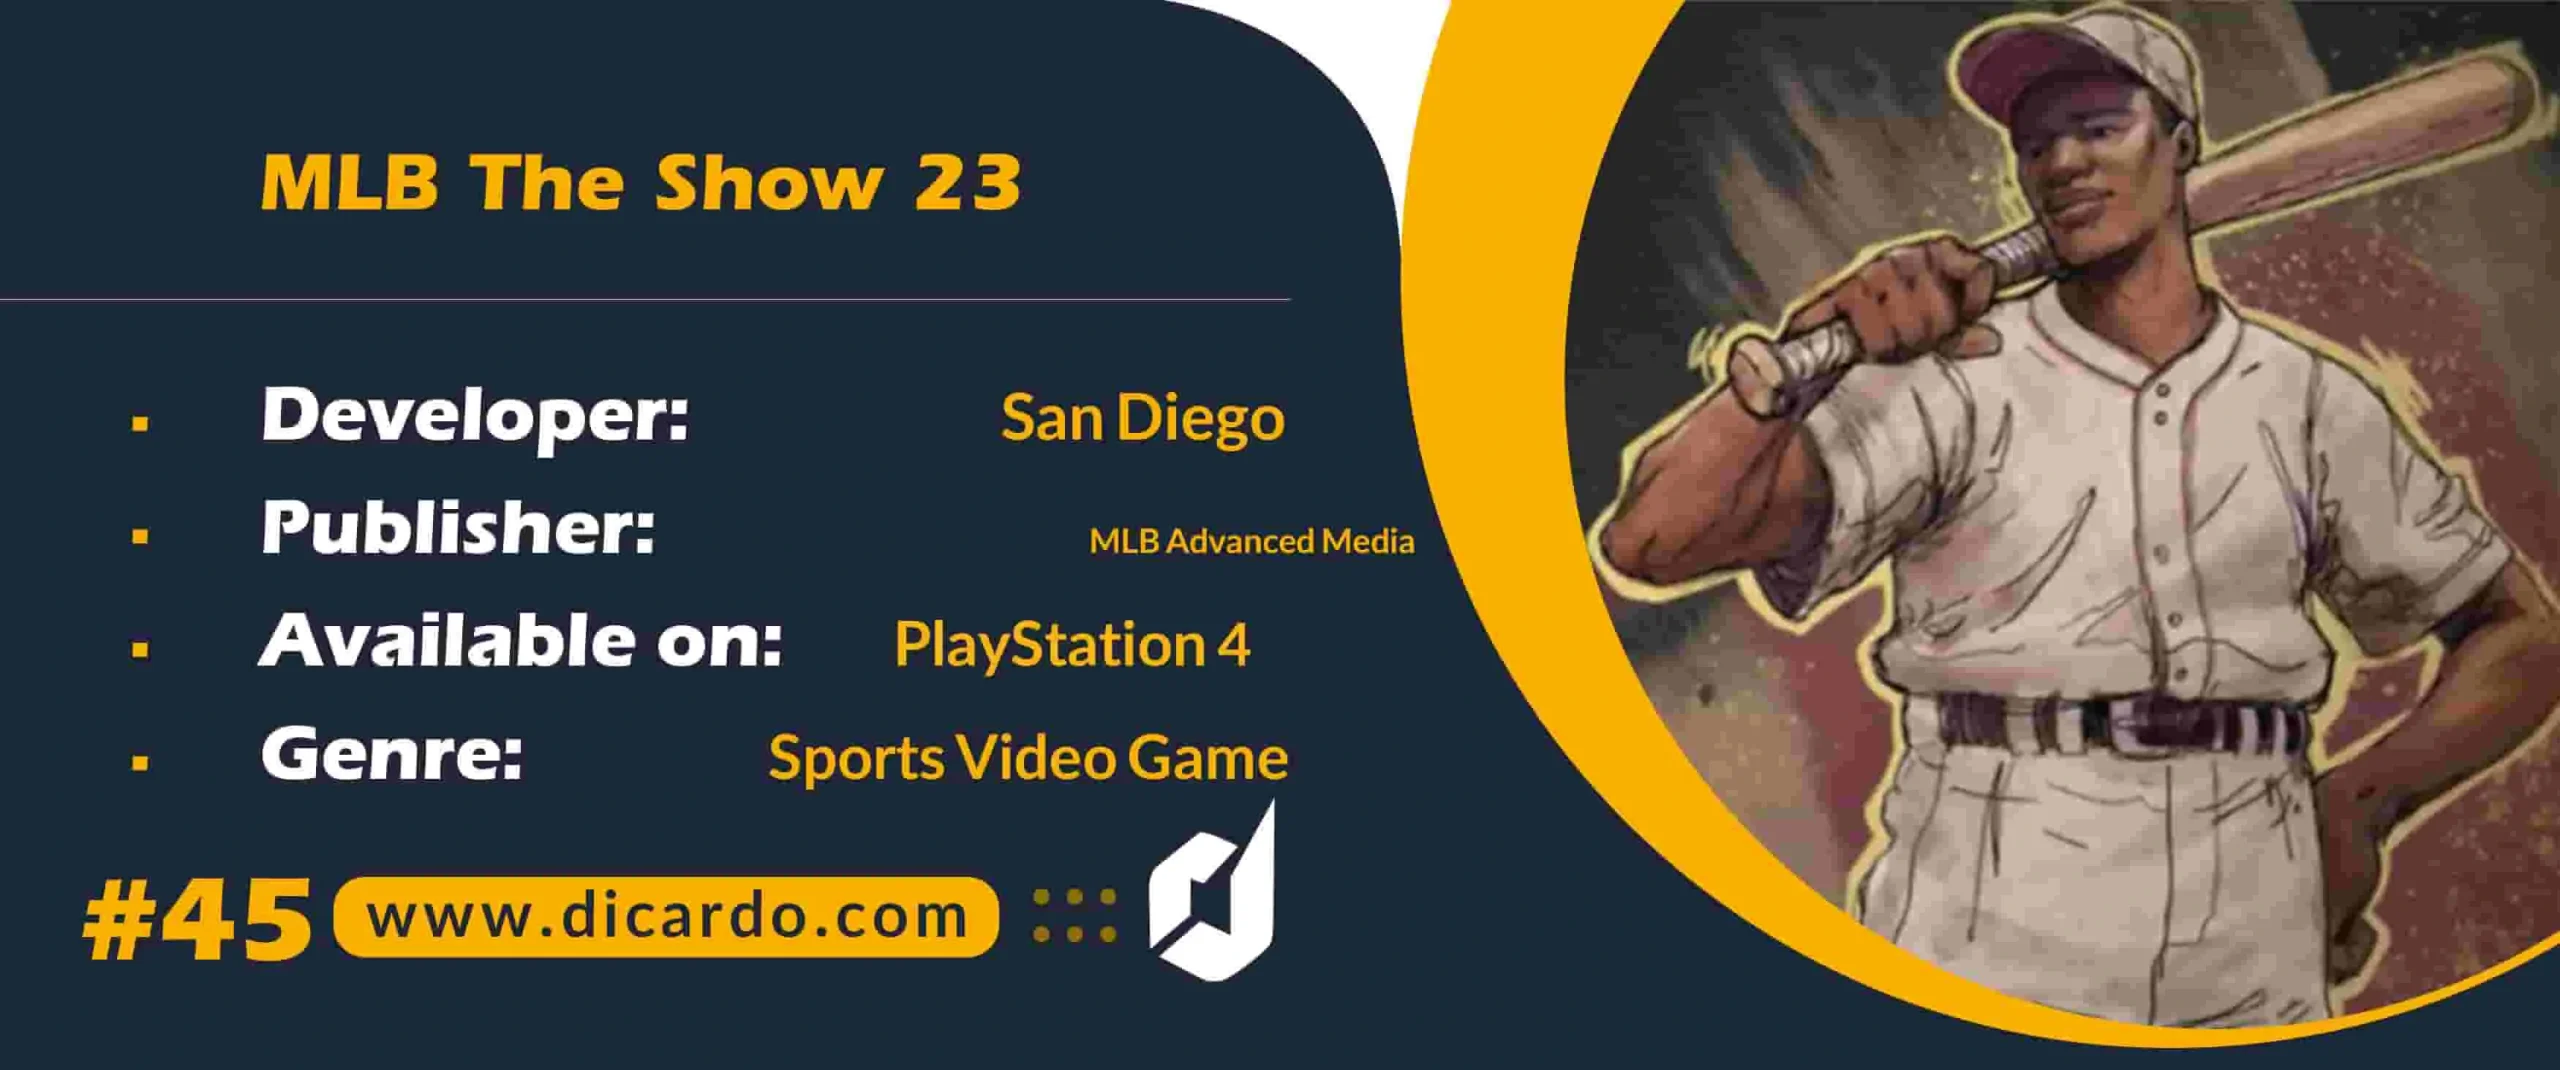 #45 ام ال بی د شوو 23 MLB The Show 23 یکی دیگر از برترین بازیهای PS4